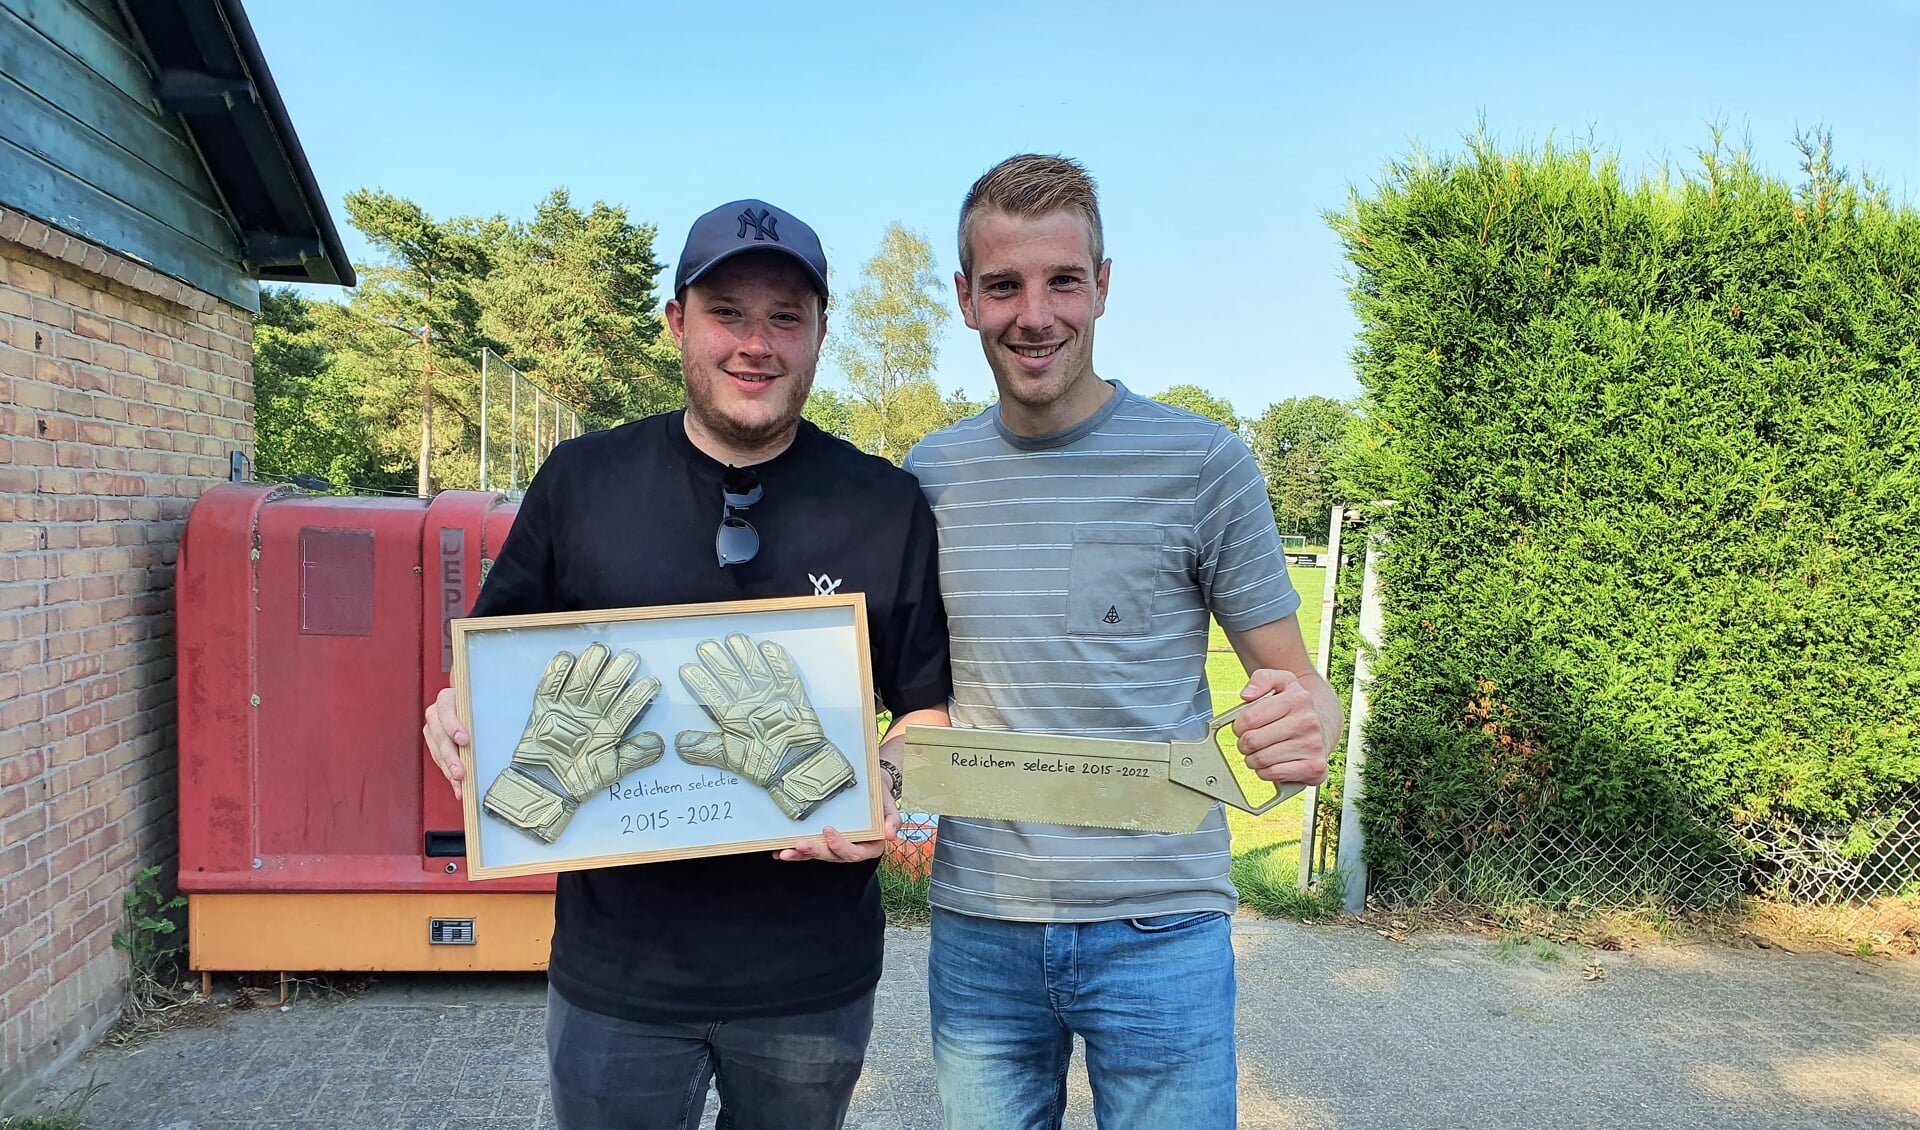 Redichem-doelman Nick van Beek en verdediger Mark Koenderink werden bij hun afscheid verrast met passende cadeaus: 'gouden' handschoenen en 'de zaag'.